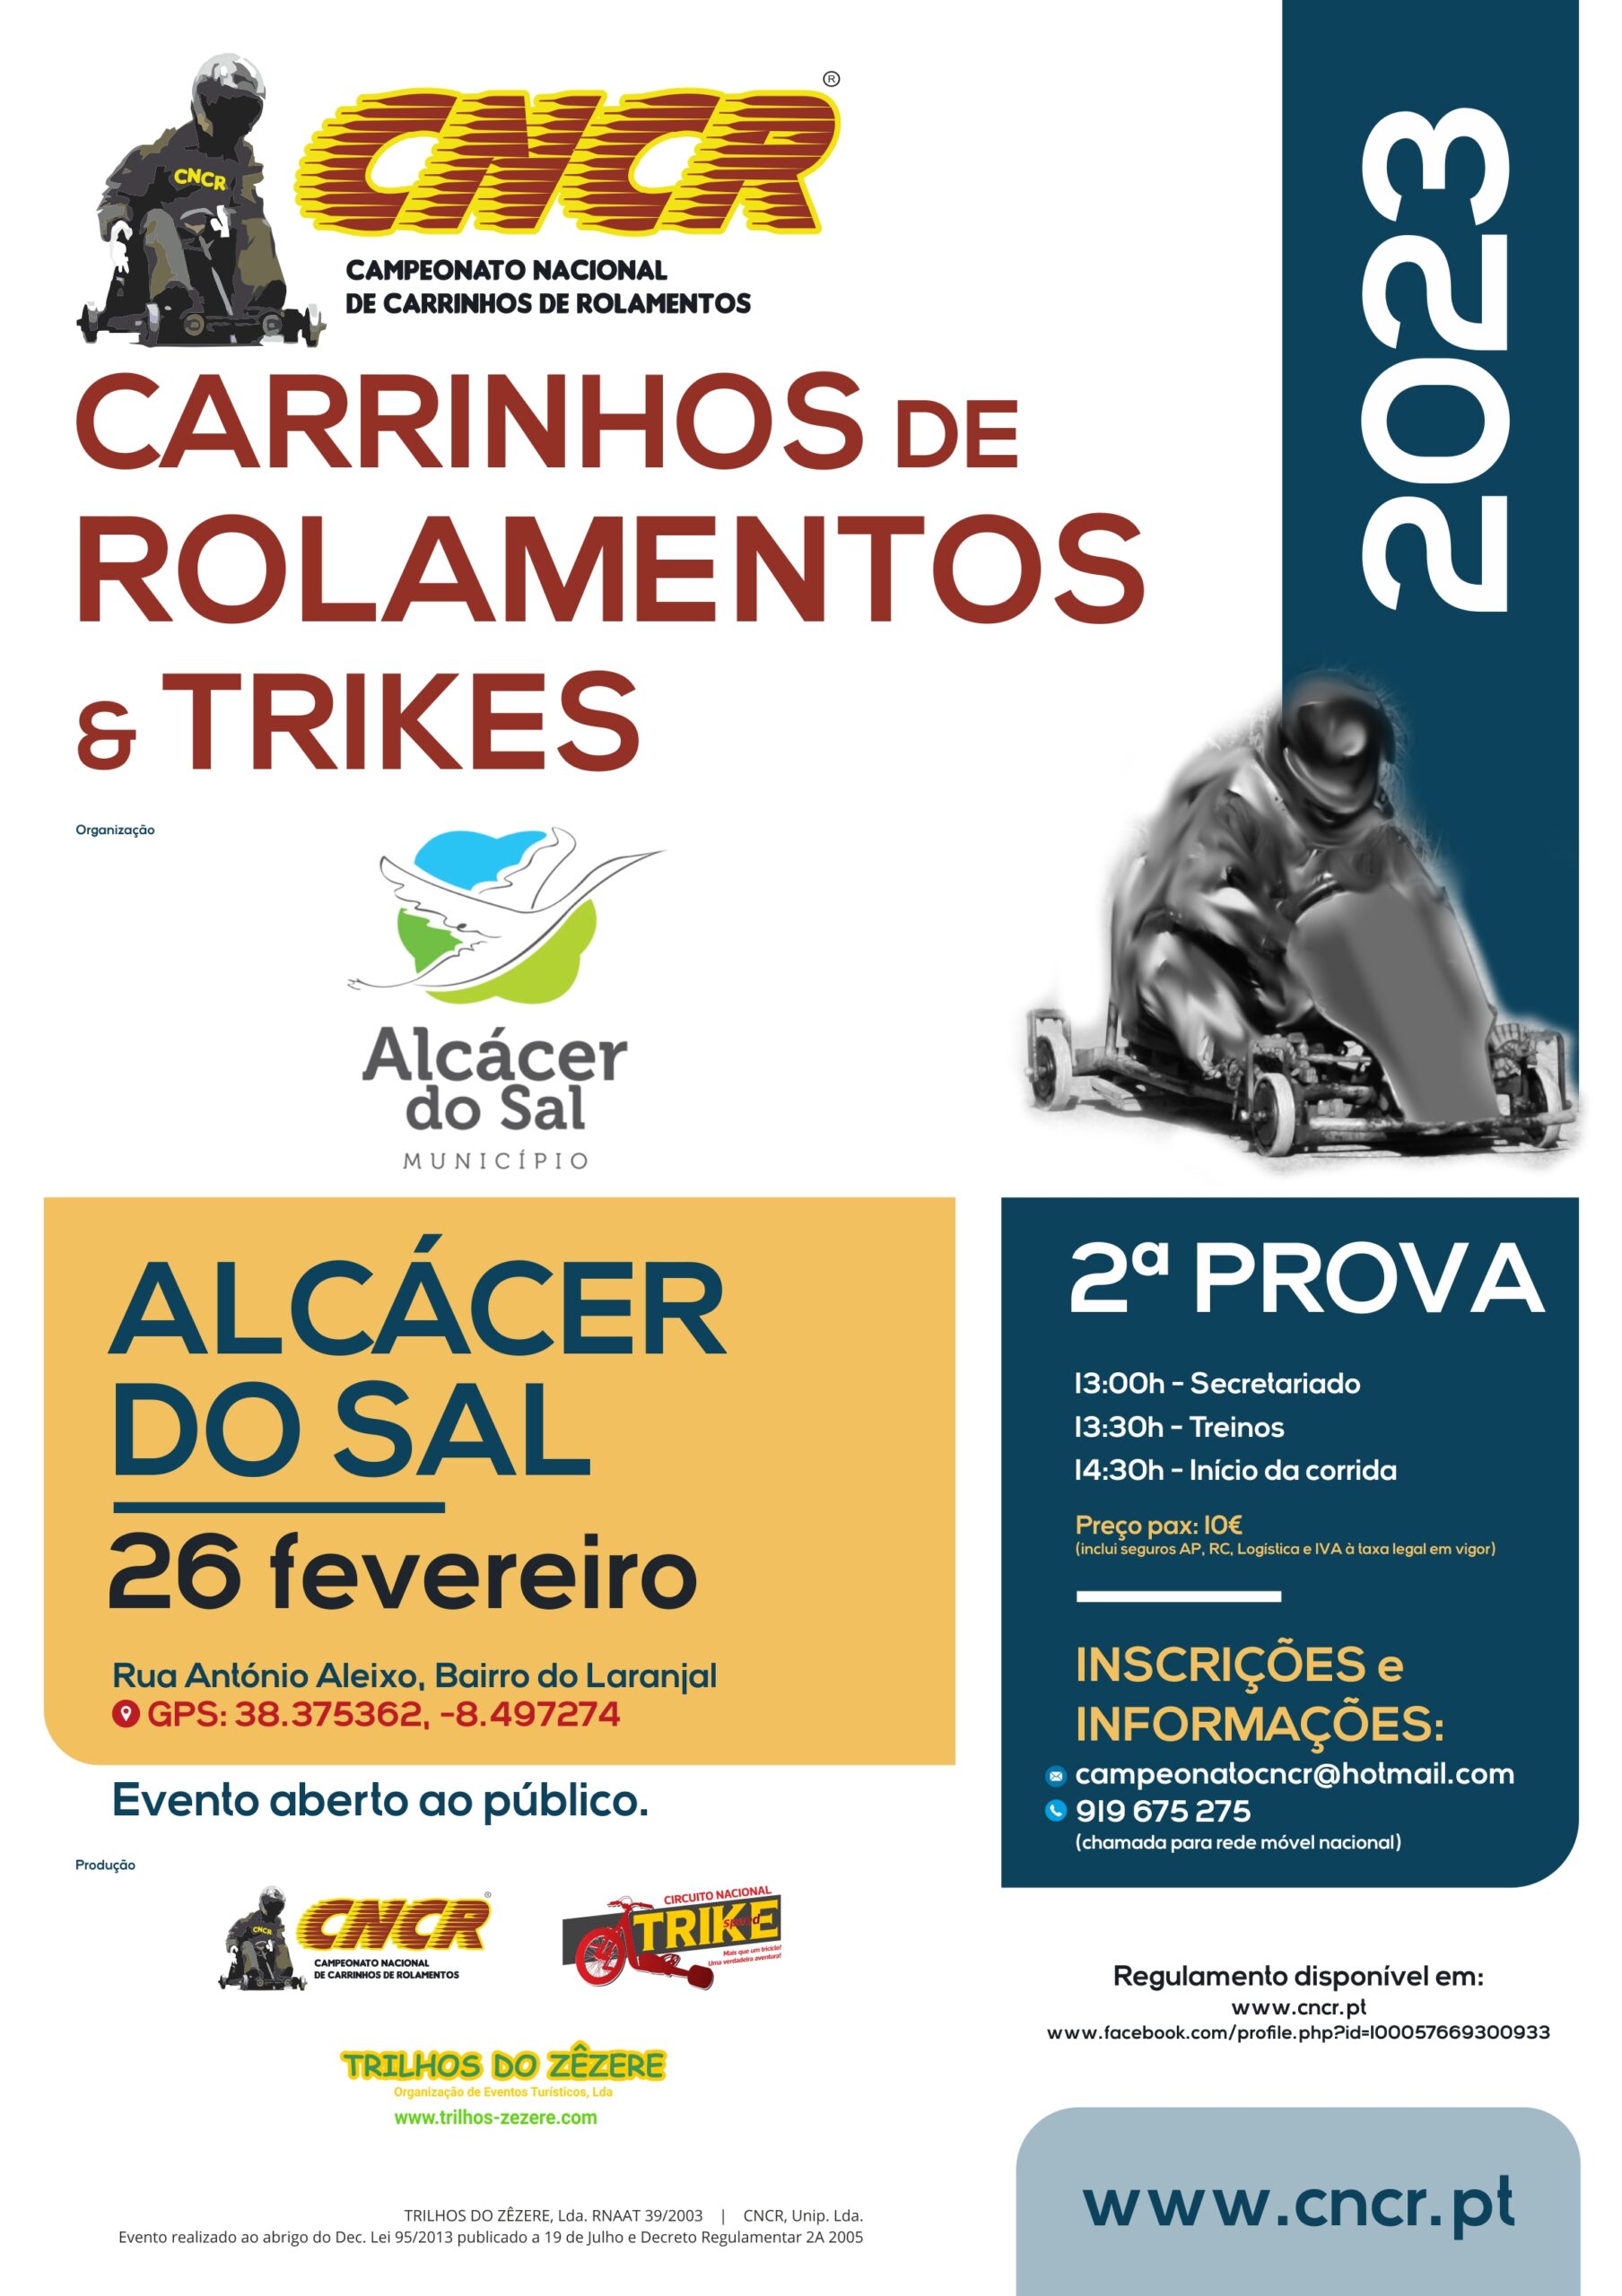 Alcácer do Sal recebe prova de Carrinhos de Rolamentos & Trikes no próximo dia 26 de fevereiro